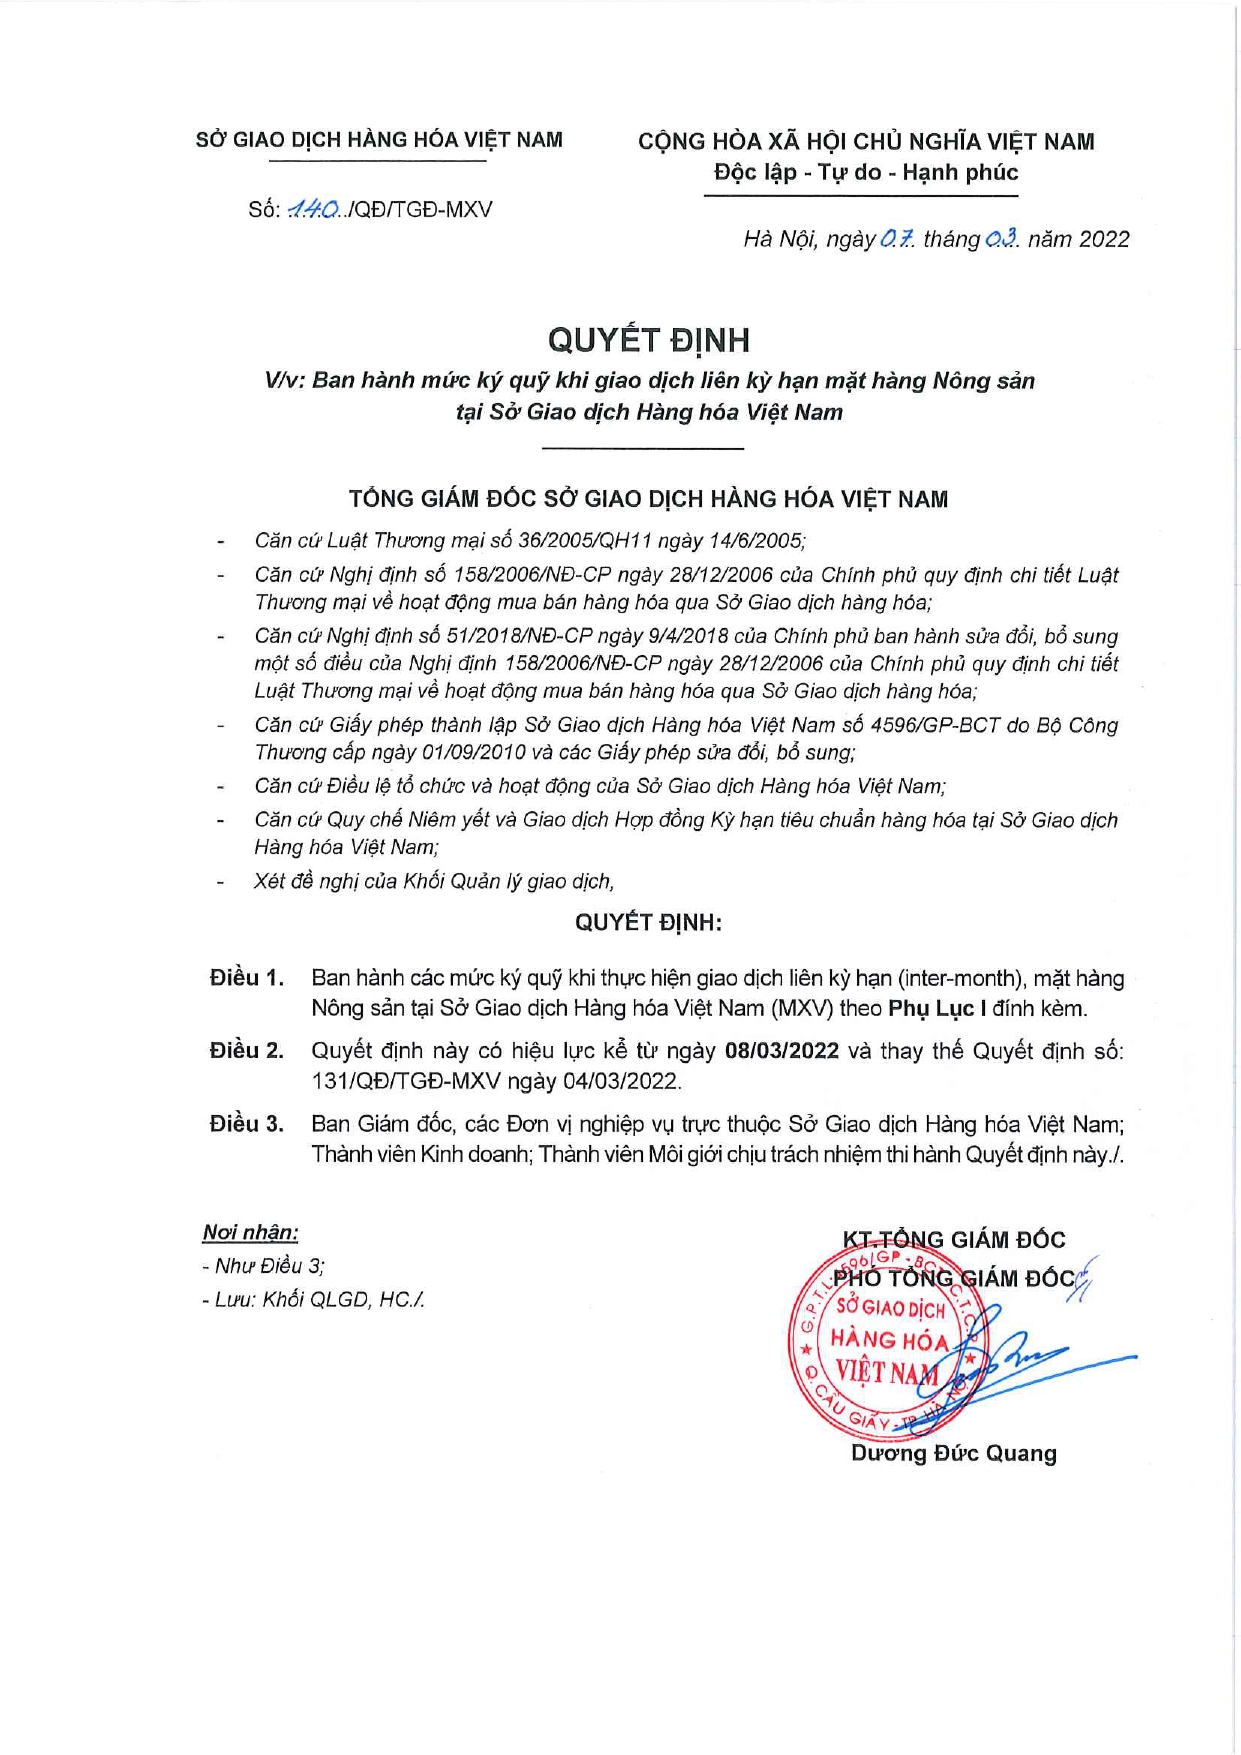 Ban hành mức ký quỹ giao dịch liên kỳ hạn mặt hàng Nông sản tại Sở Giao dịch Hàng hóa Việt Nam